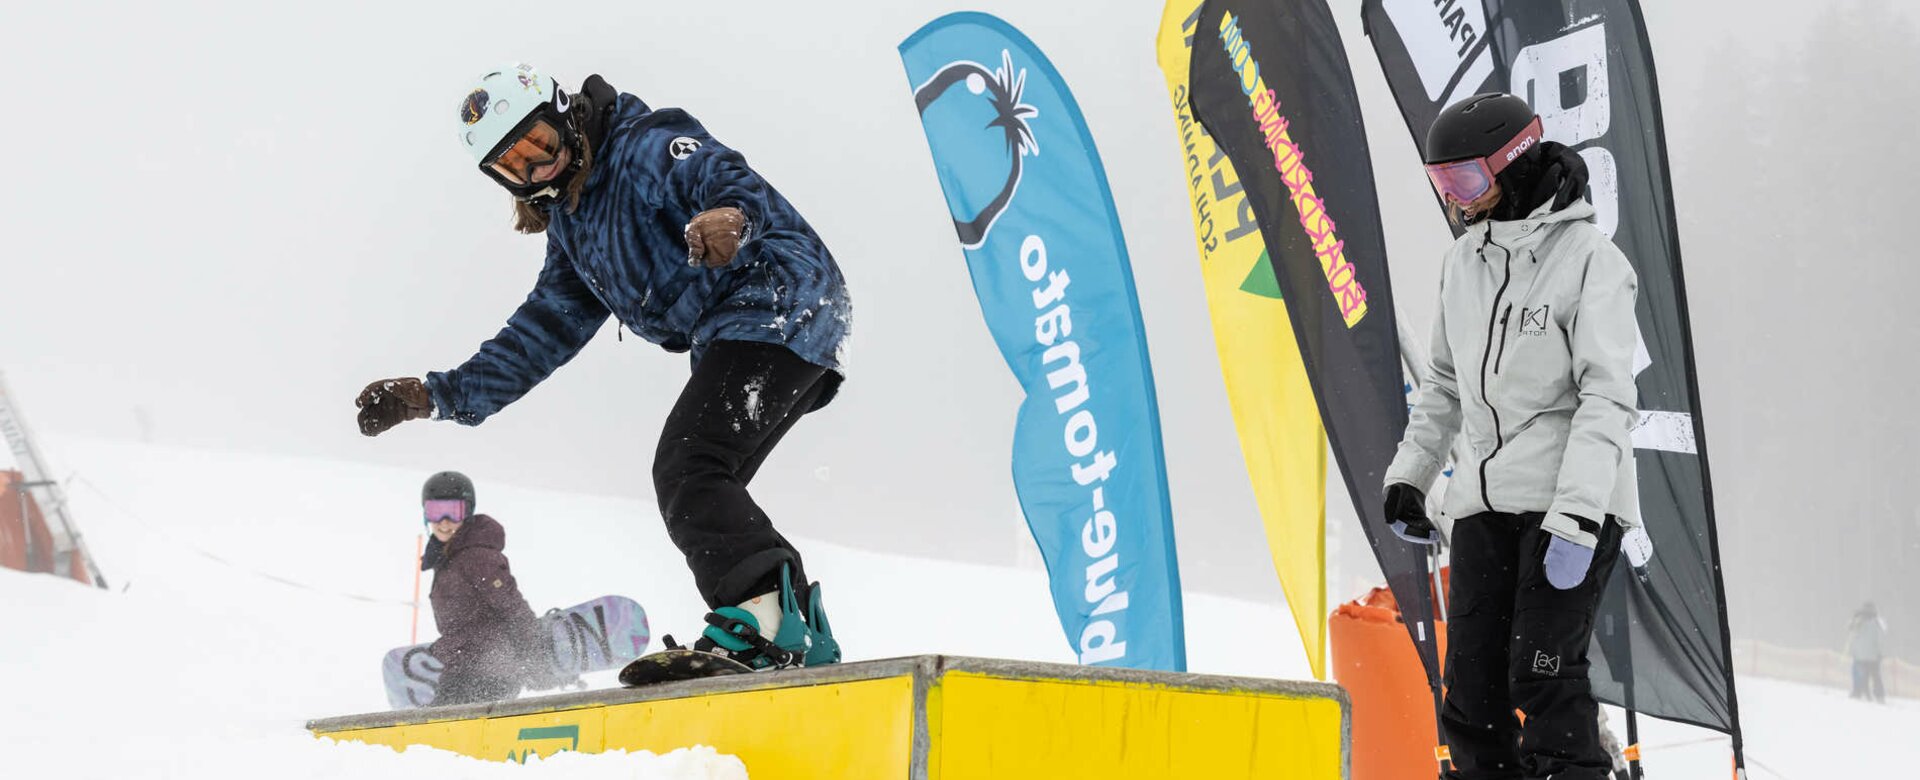 Snowboarderin erlernt einen neuen Stunt. | © Hannes Mautner